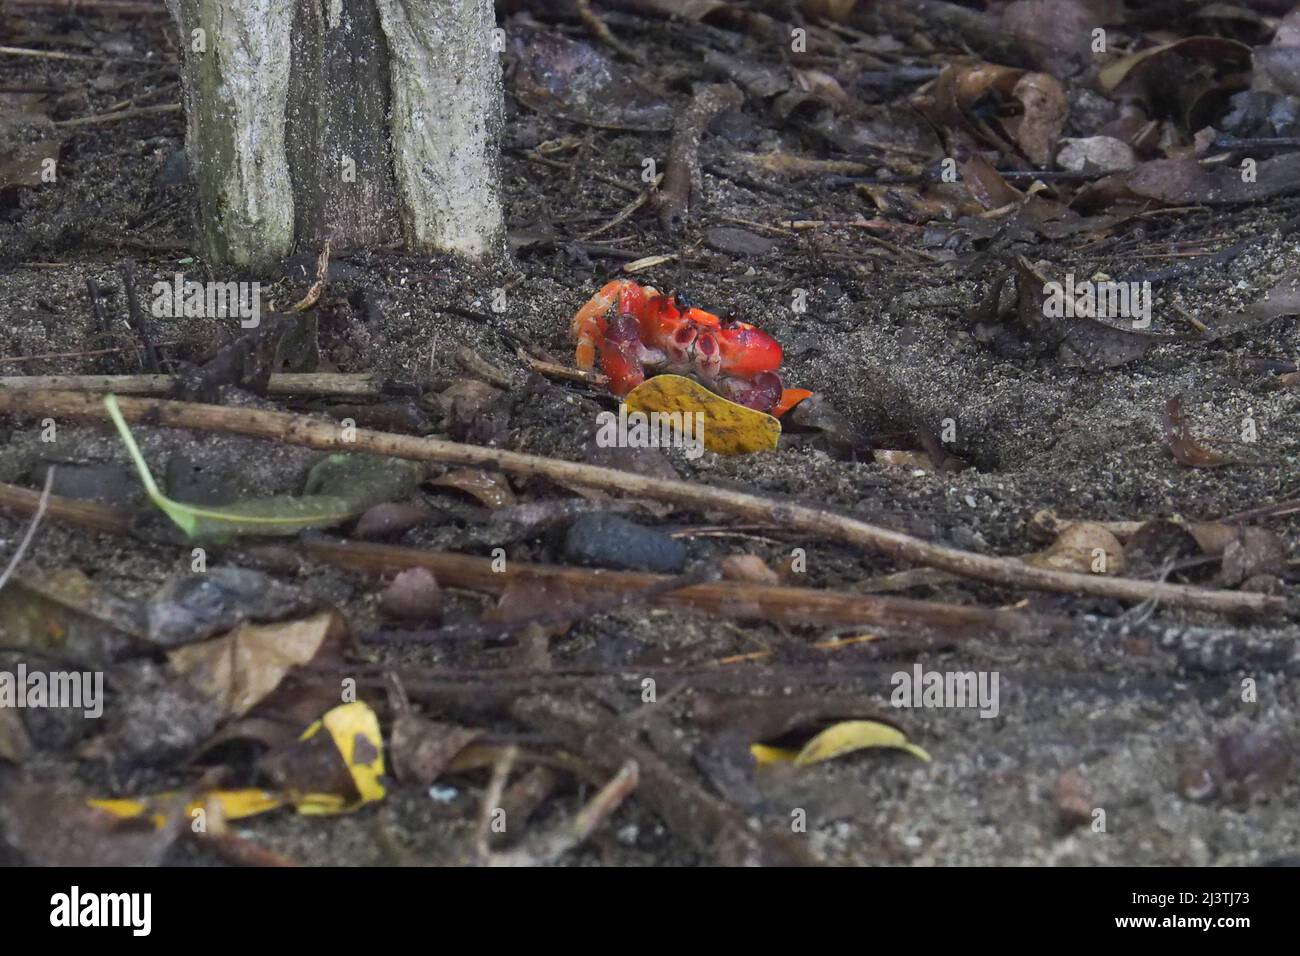 Martinica , Antille, Les salines, crabes Touloulou sur la plage de Sable noir, petit crabe terrestre rouge et noir Foto Stock